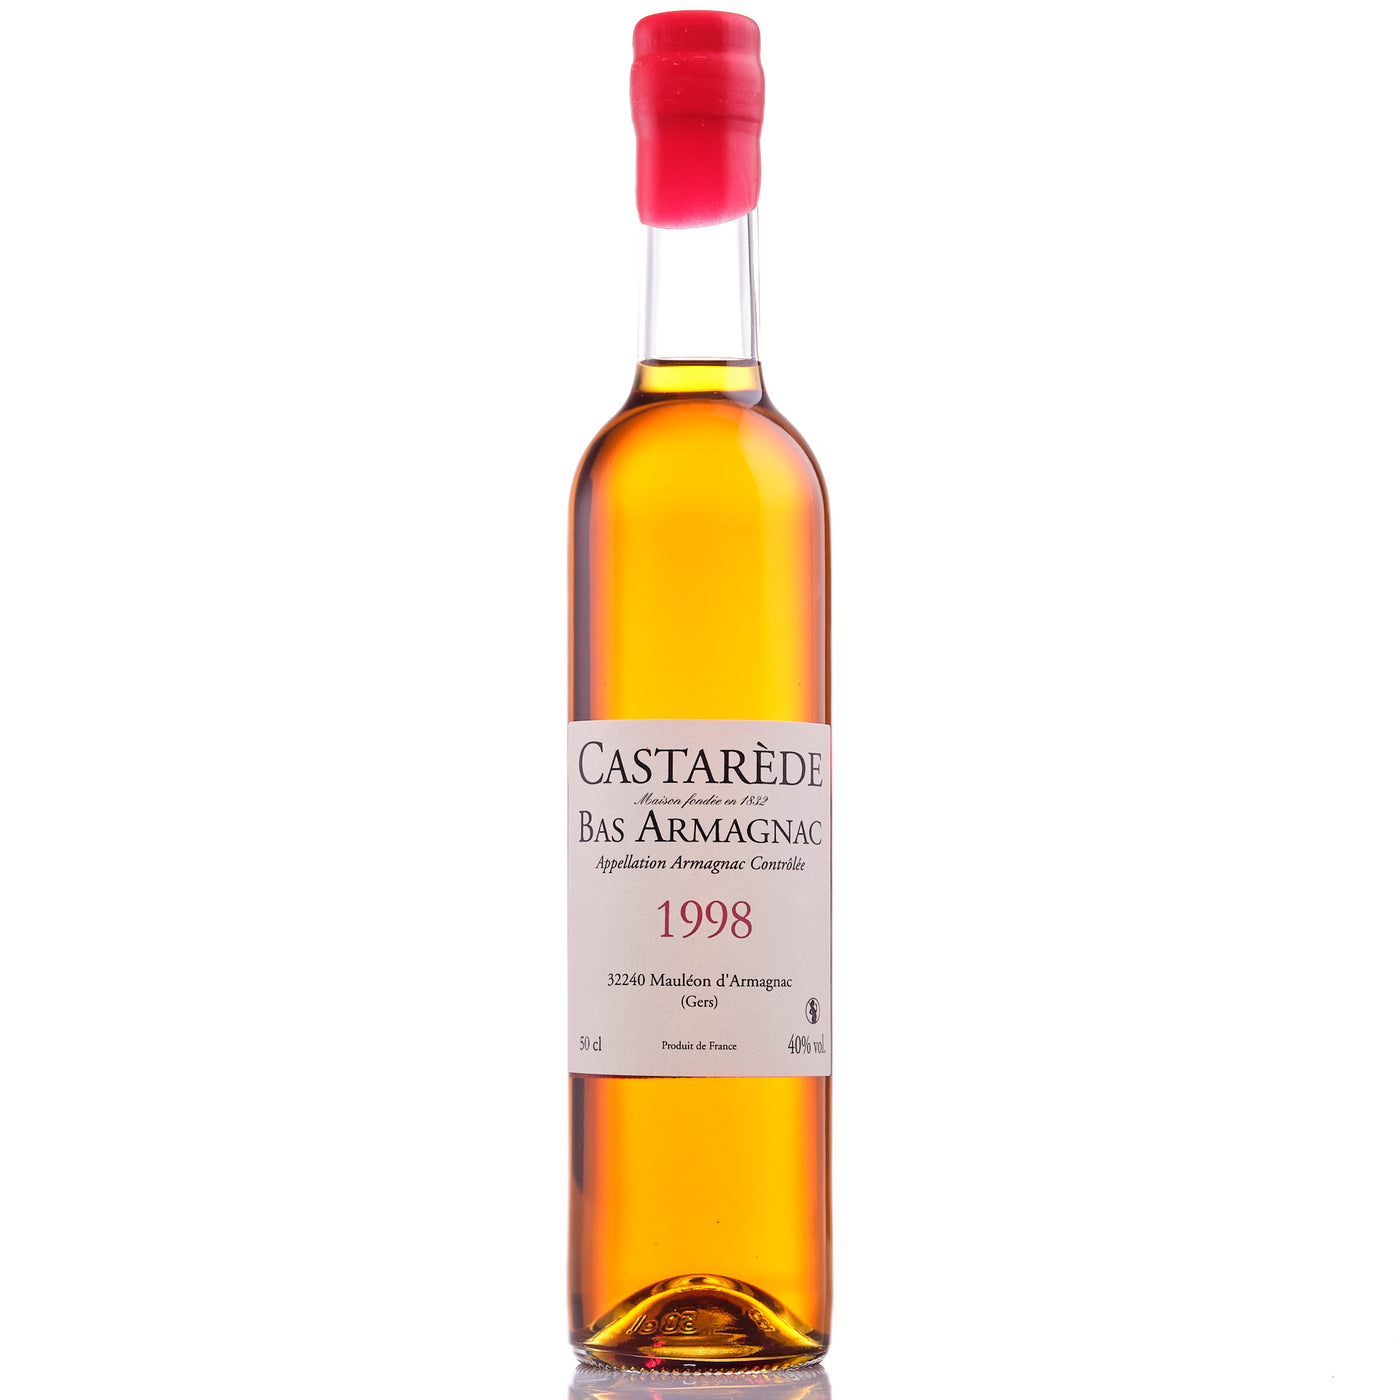 Castarède 1998 50cl (10/2021)